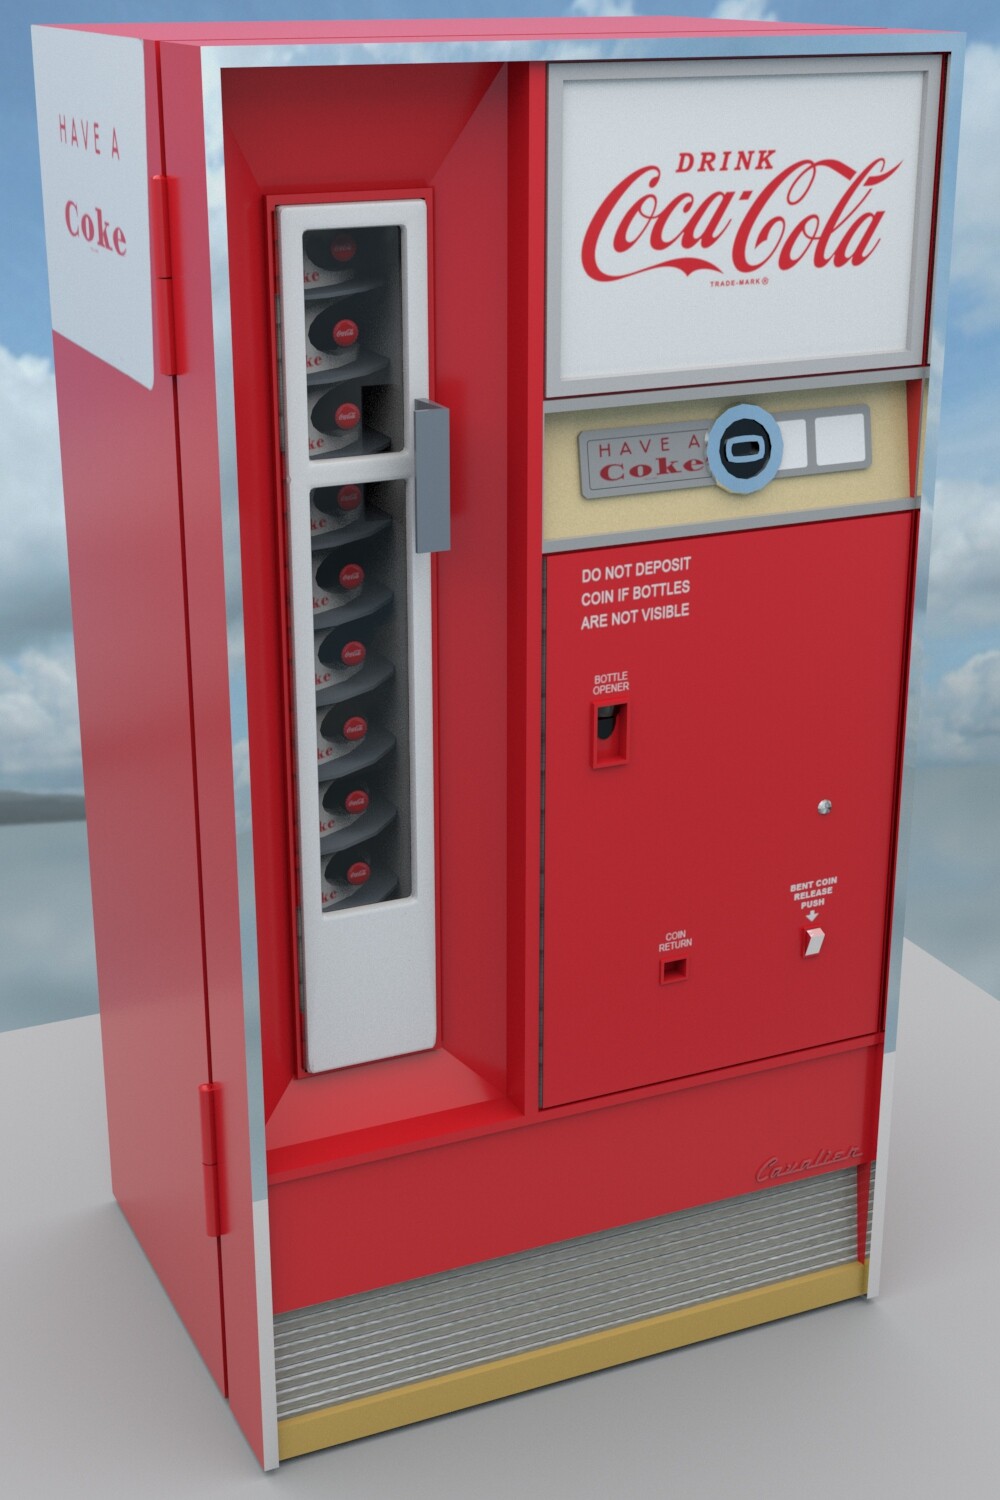 10₵ Coke Machine
13K Tris